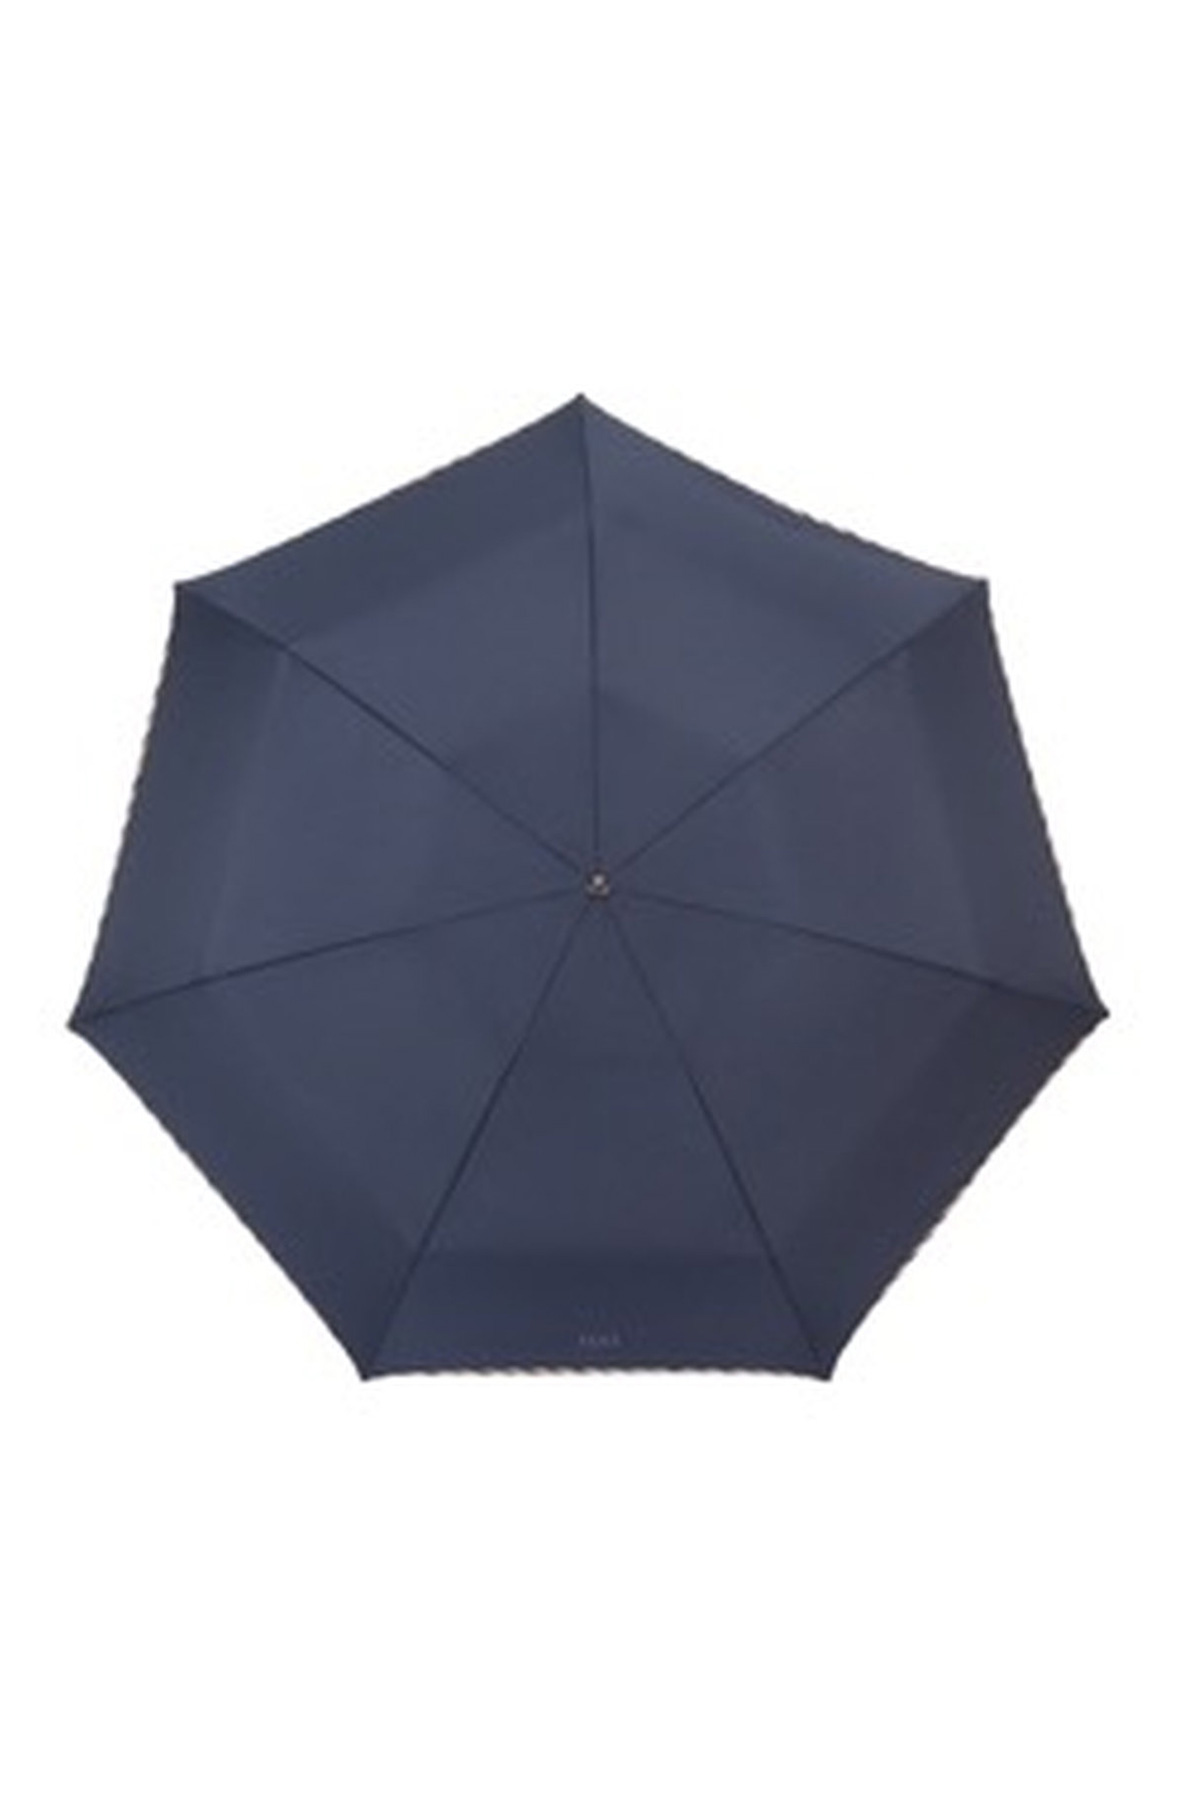 【紳士雨傘】折りたたみ傘無地パイピング 詳細画像 7